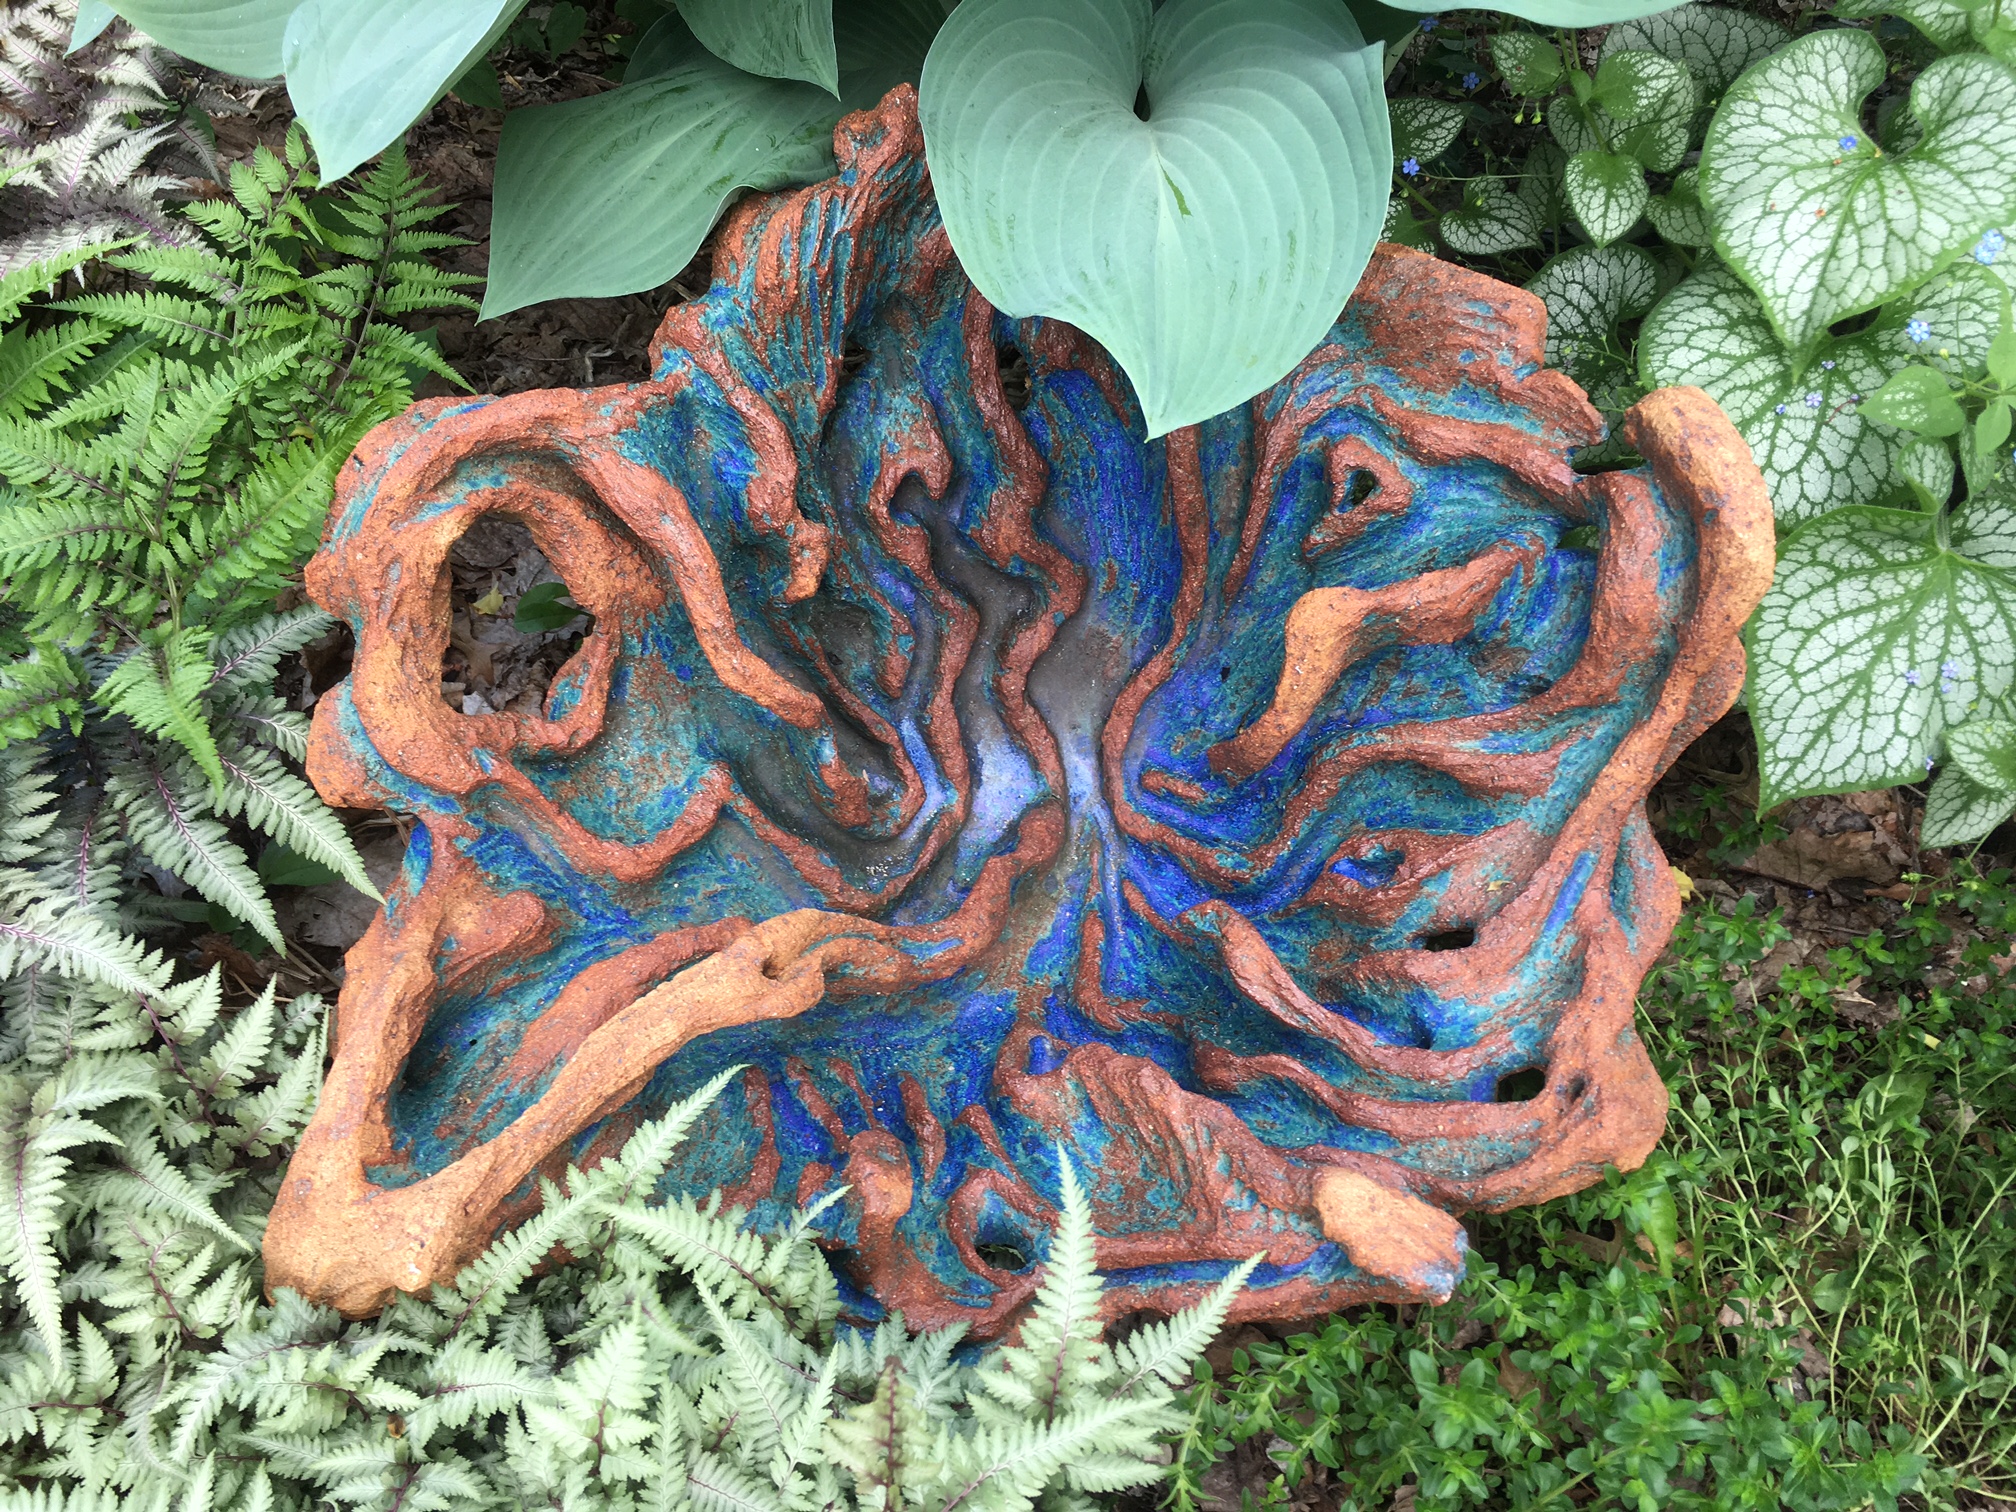 Carved garden bowl